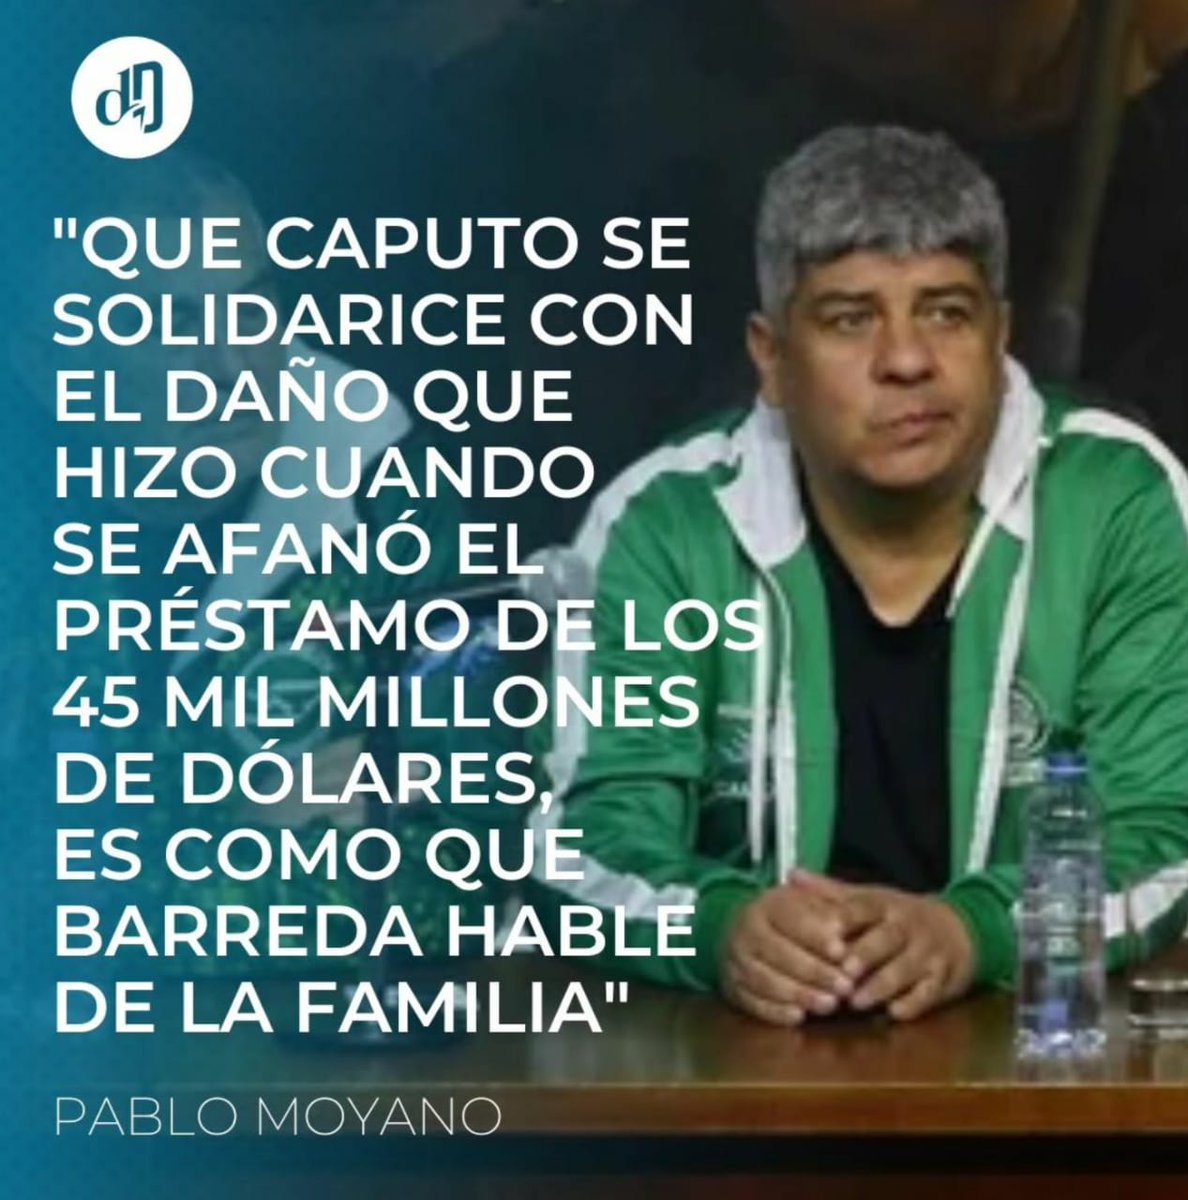 Pablo: